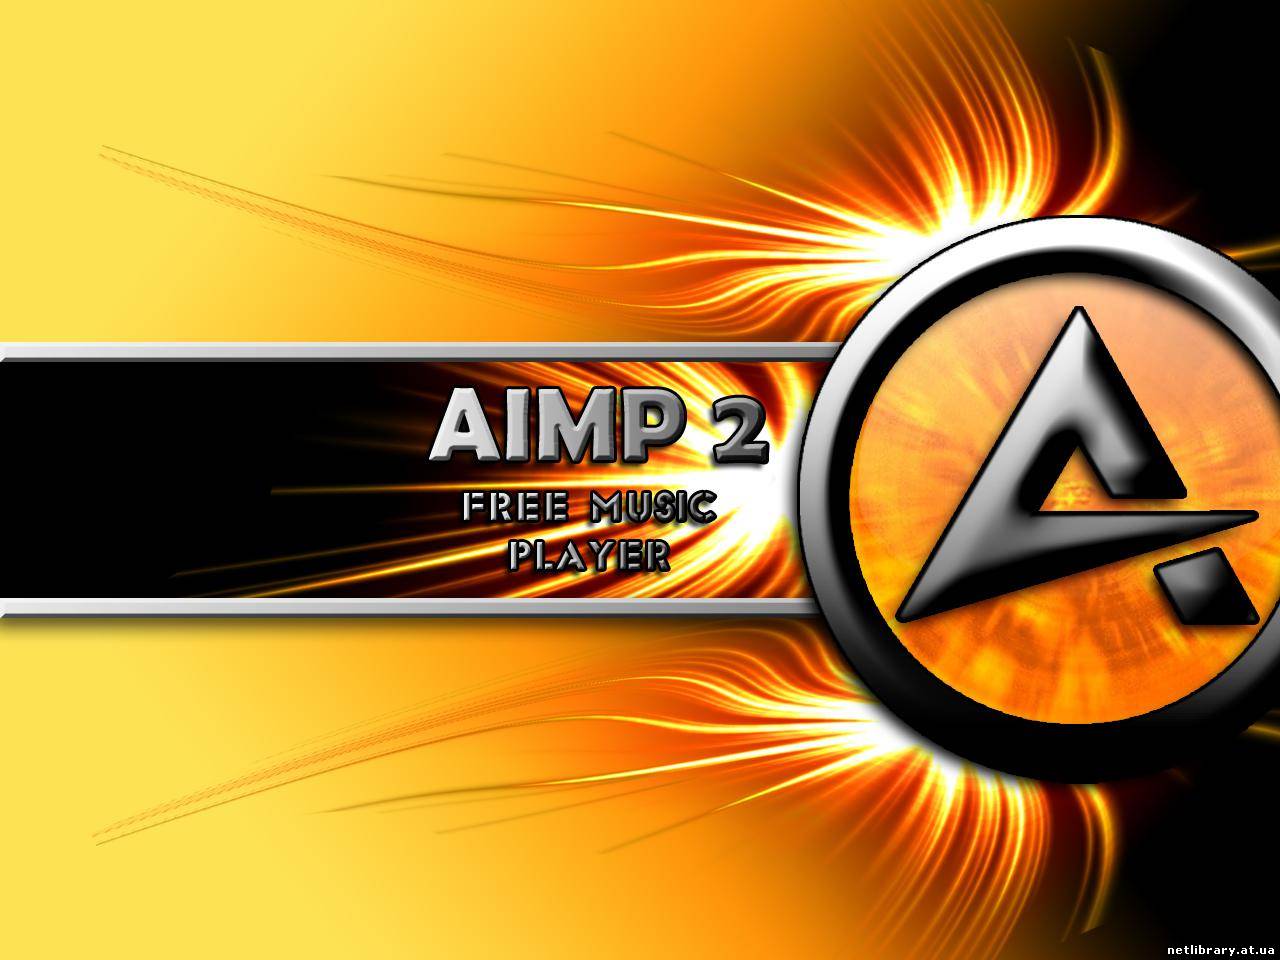 AIMP 2.11